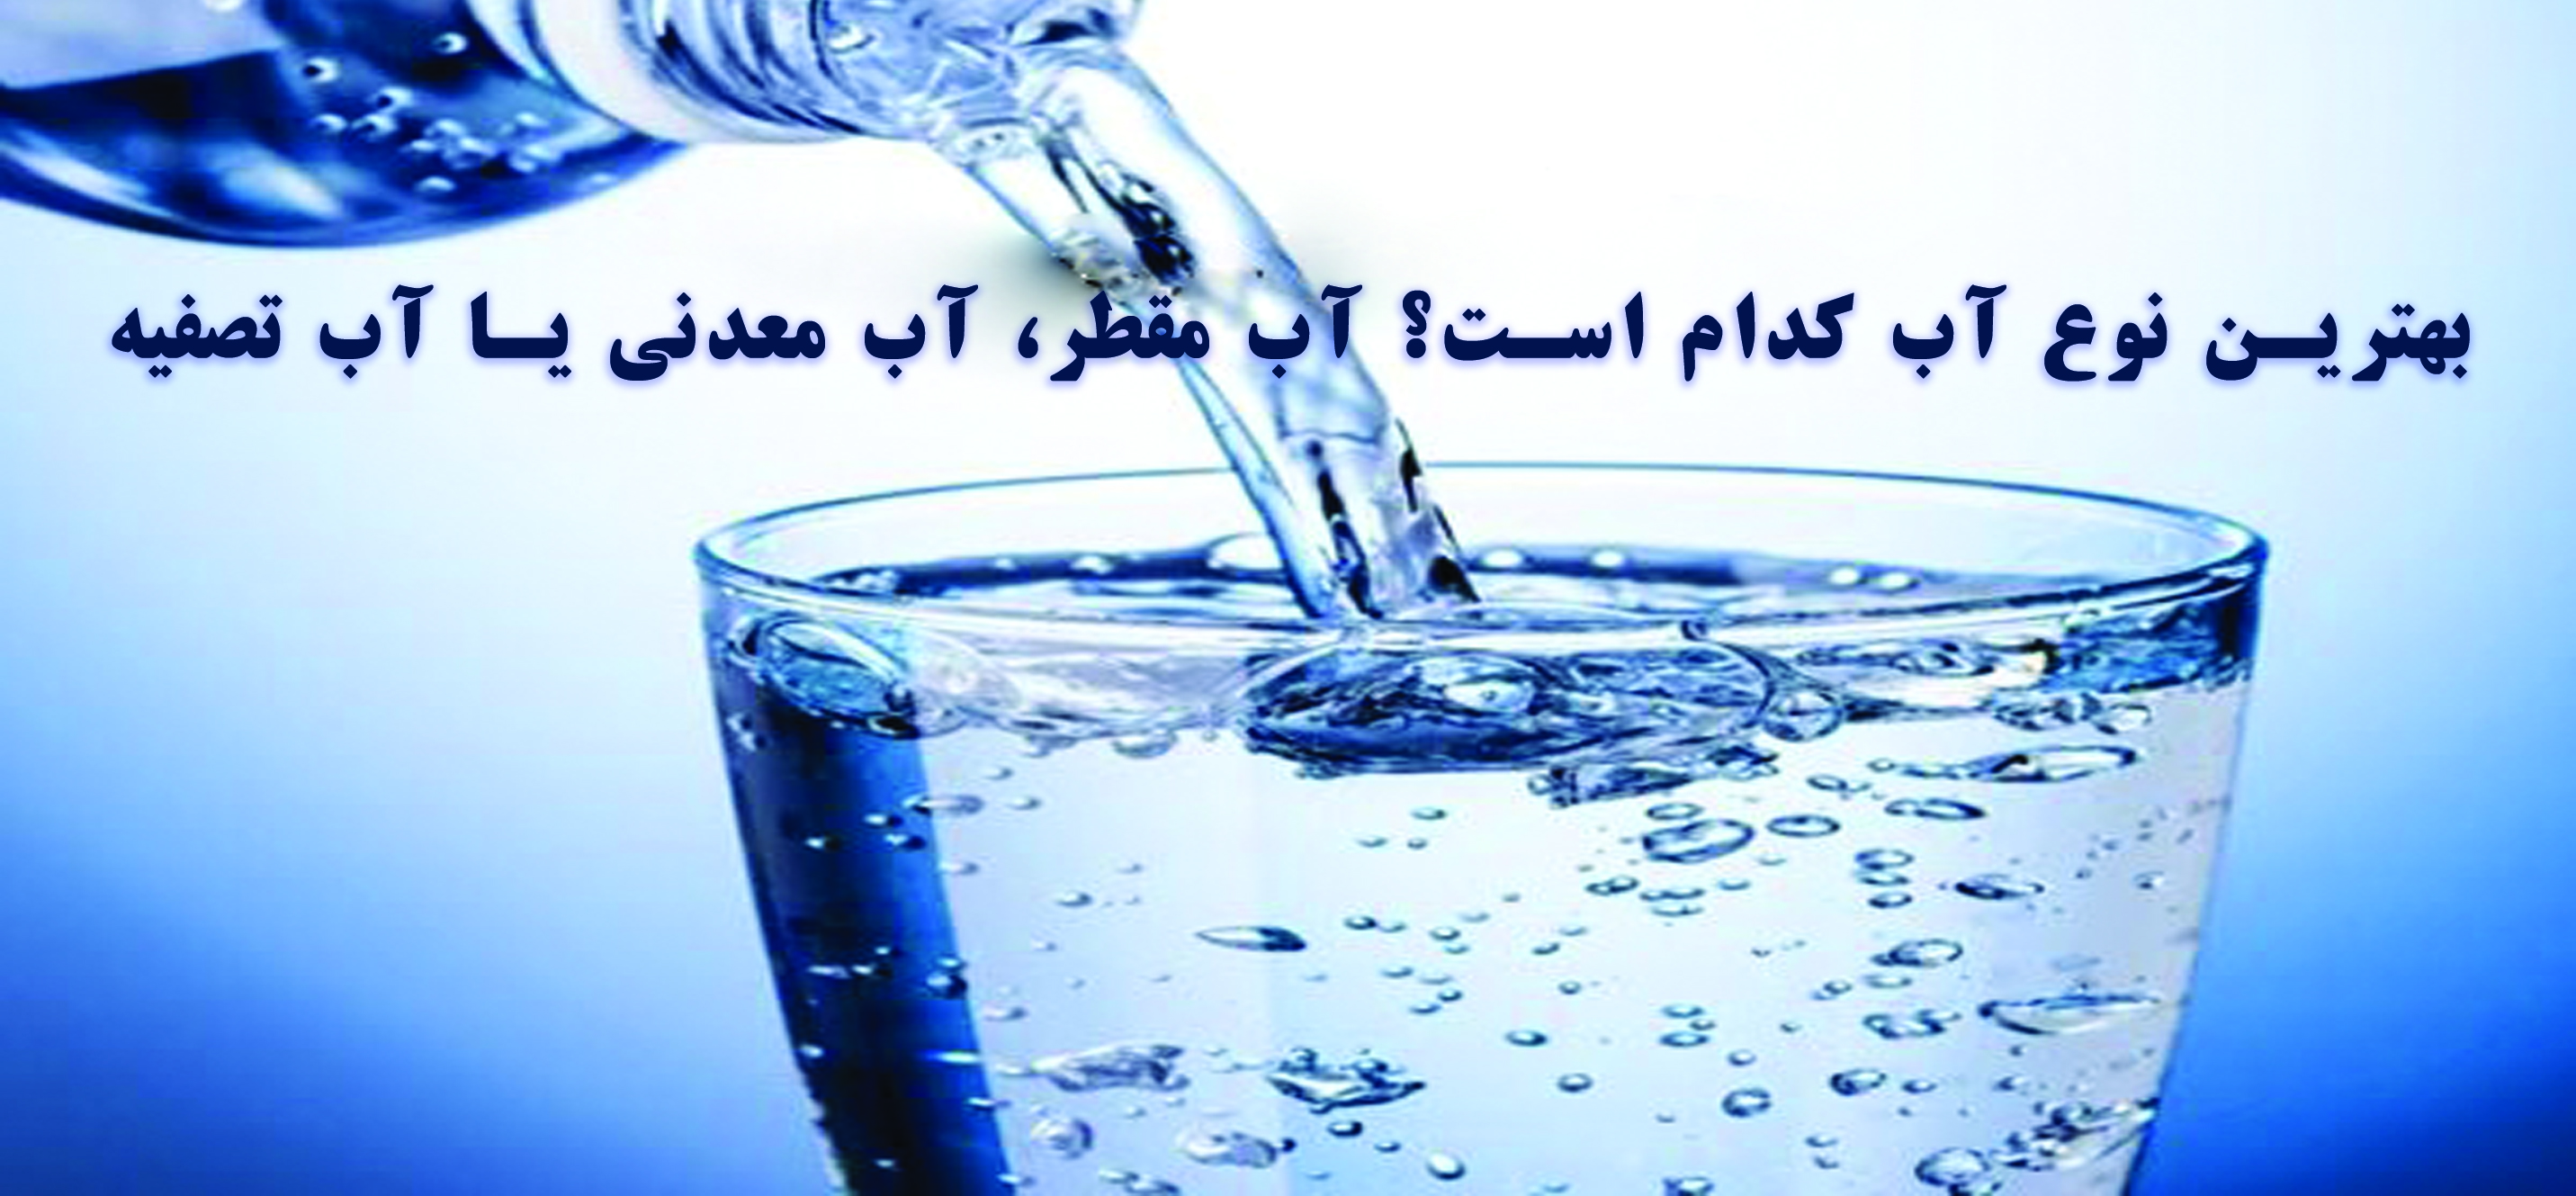 بهترین نوع آب کدام است؟ آب مقطر، آب معدنی یا آب تصفیه